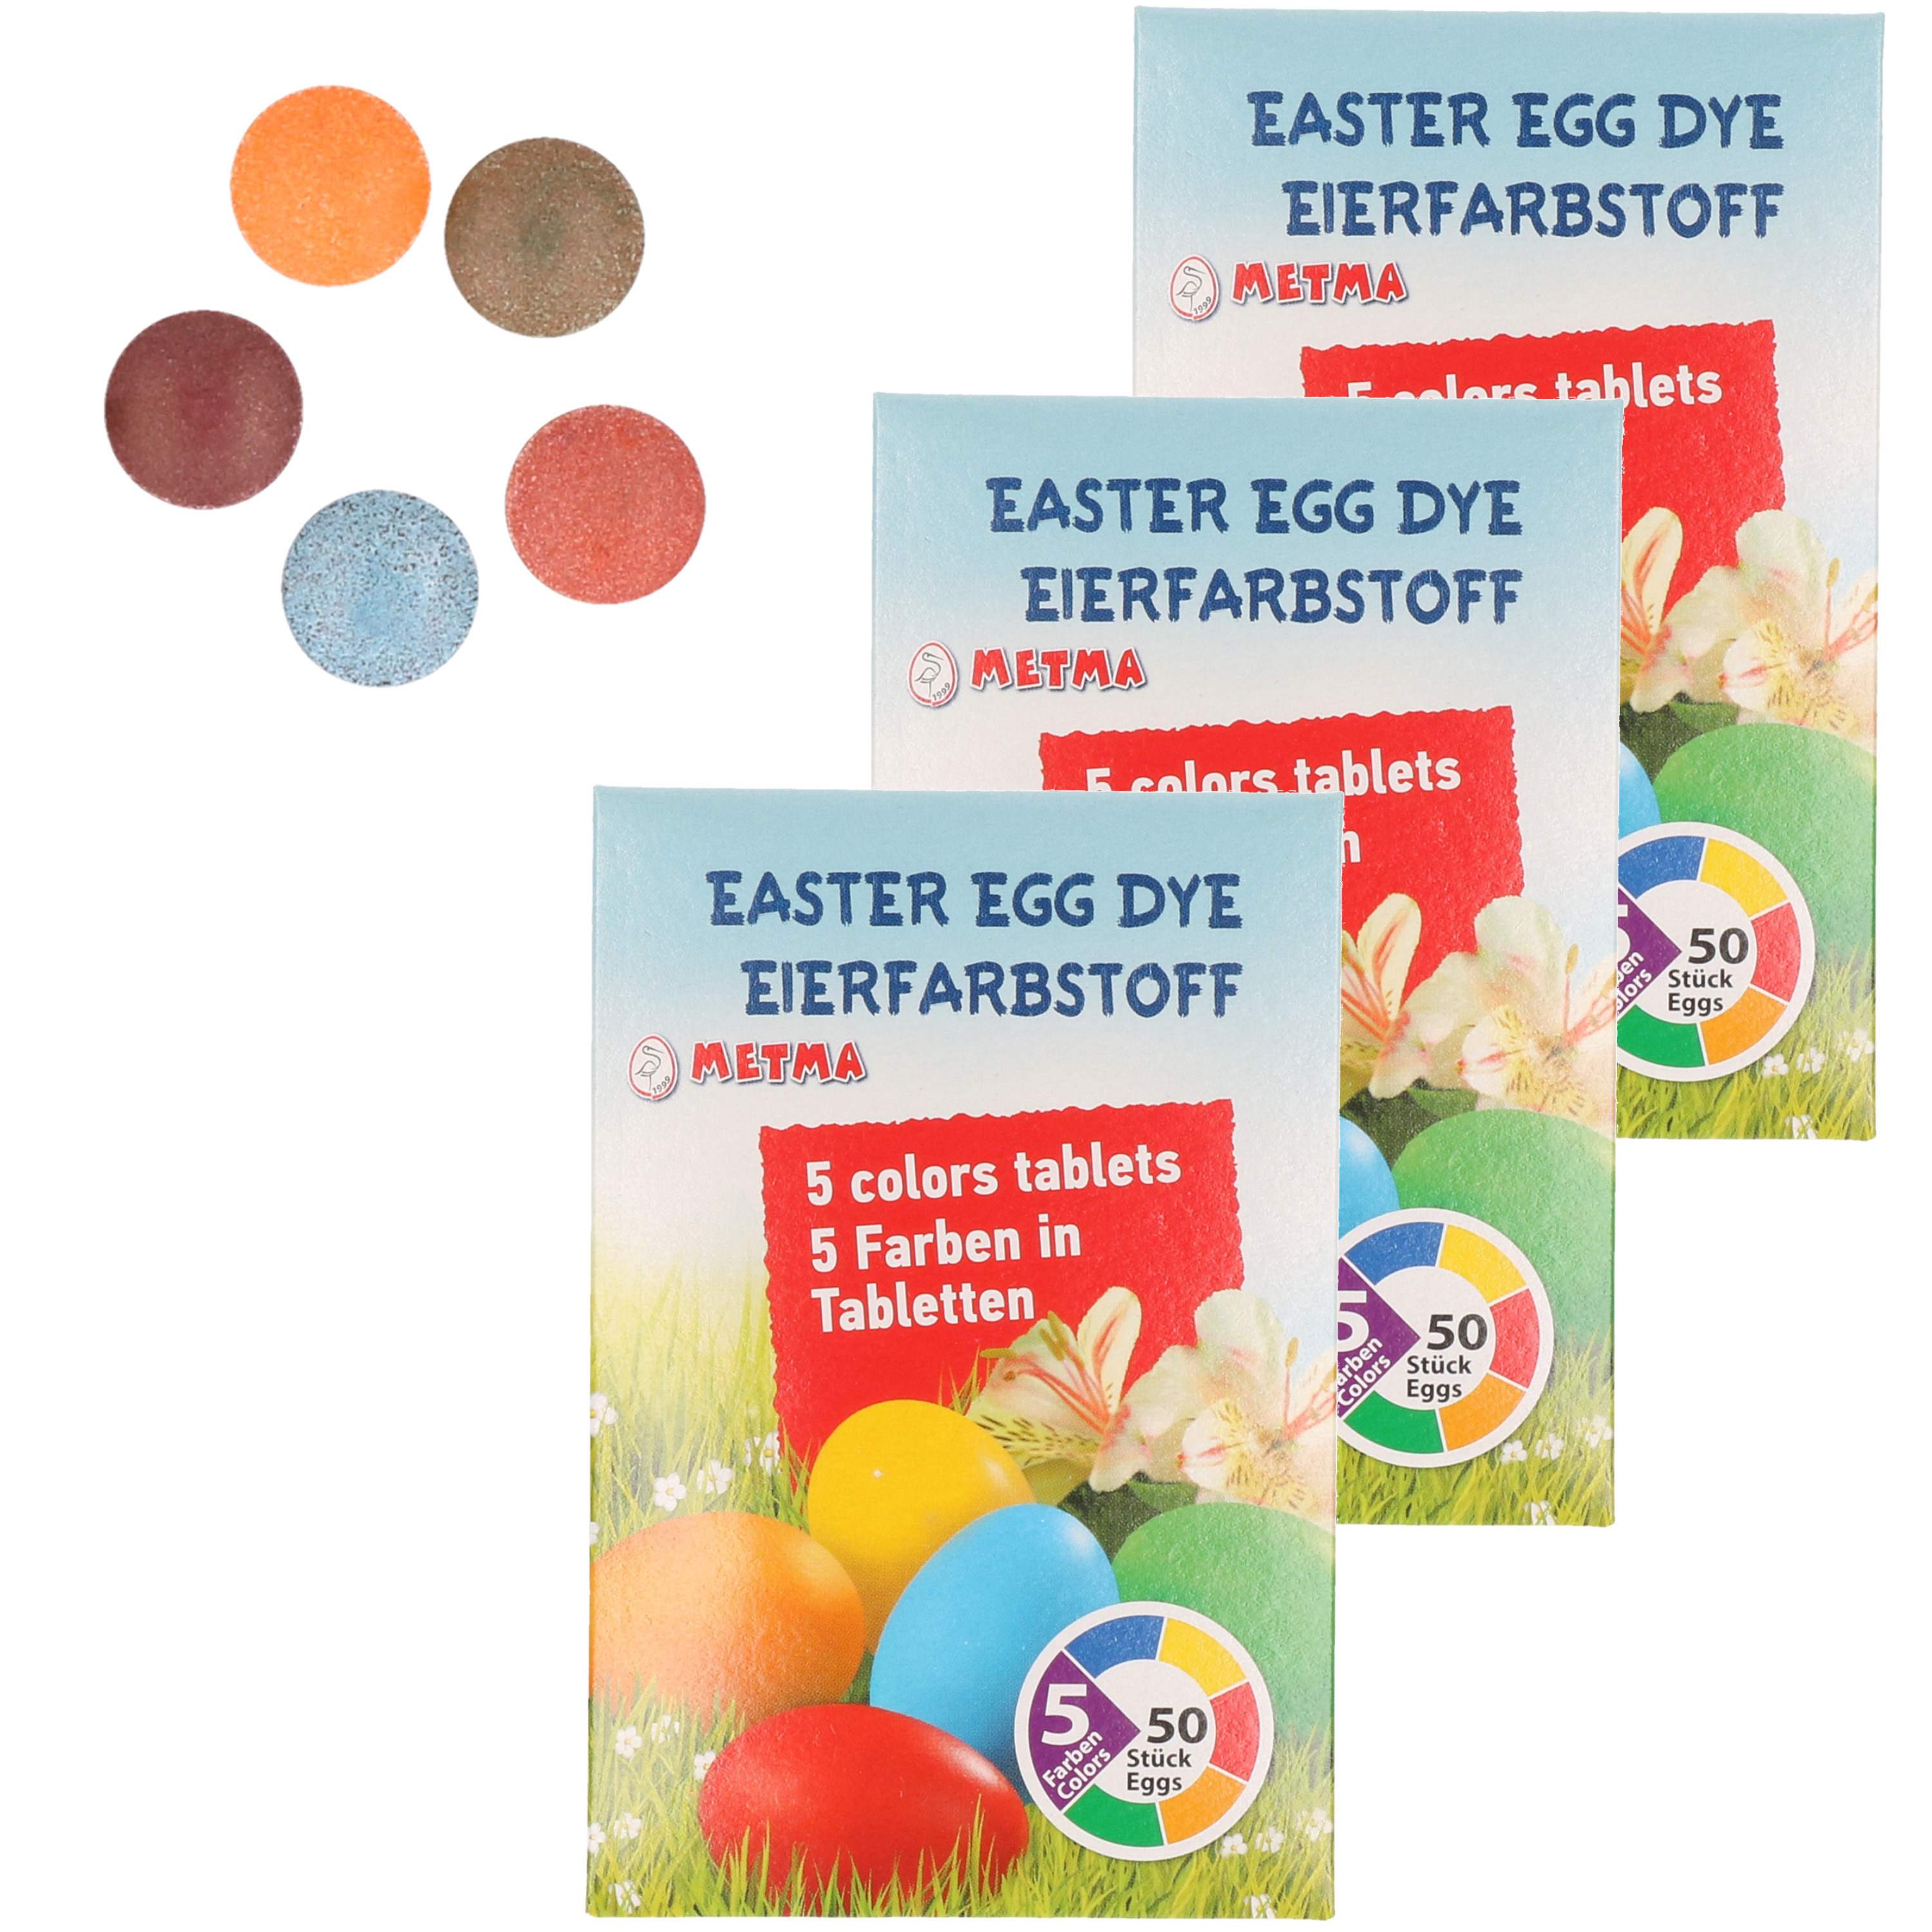 Paasei verf kleurtabletten ca. 150 eieren